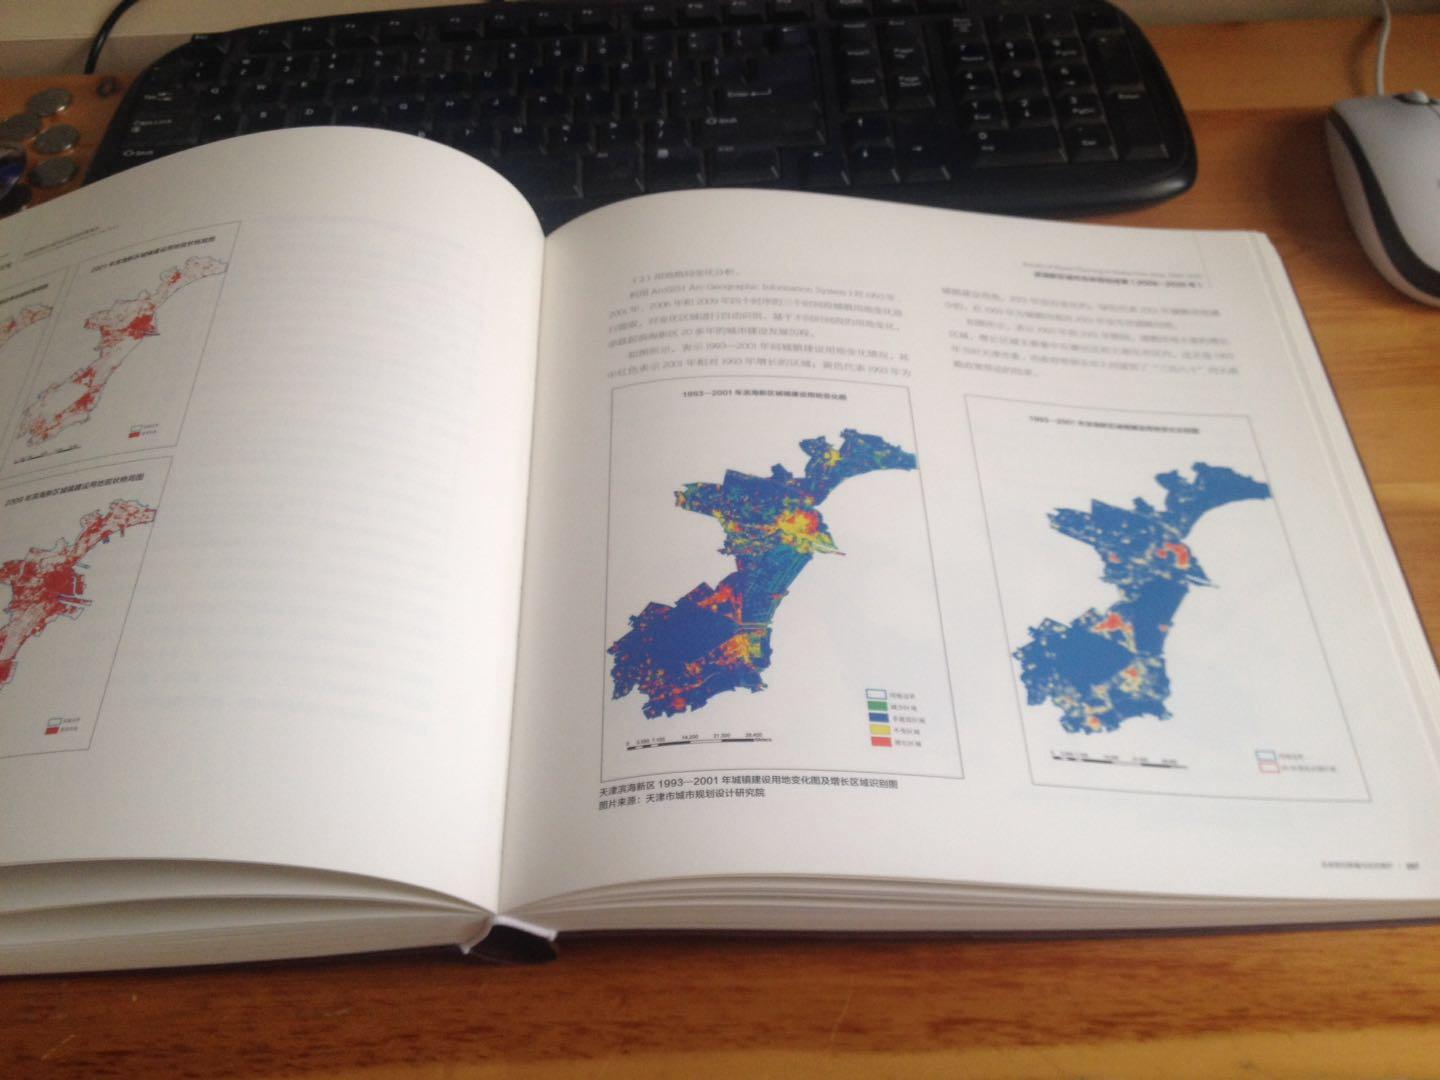 非常好的规划类书籍，信息量大，详细地展示了天津滨海新区的规划愿景。